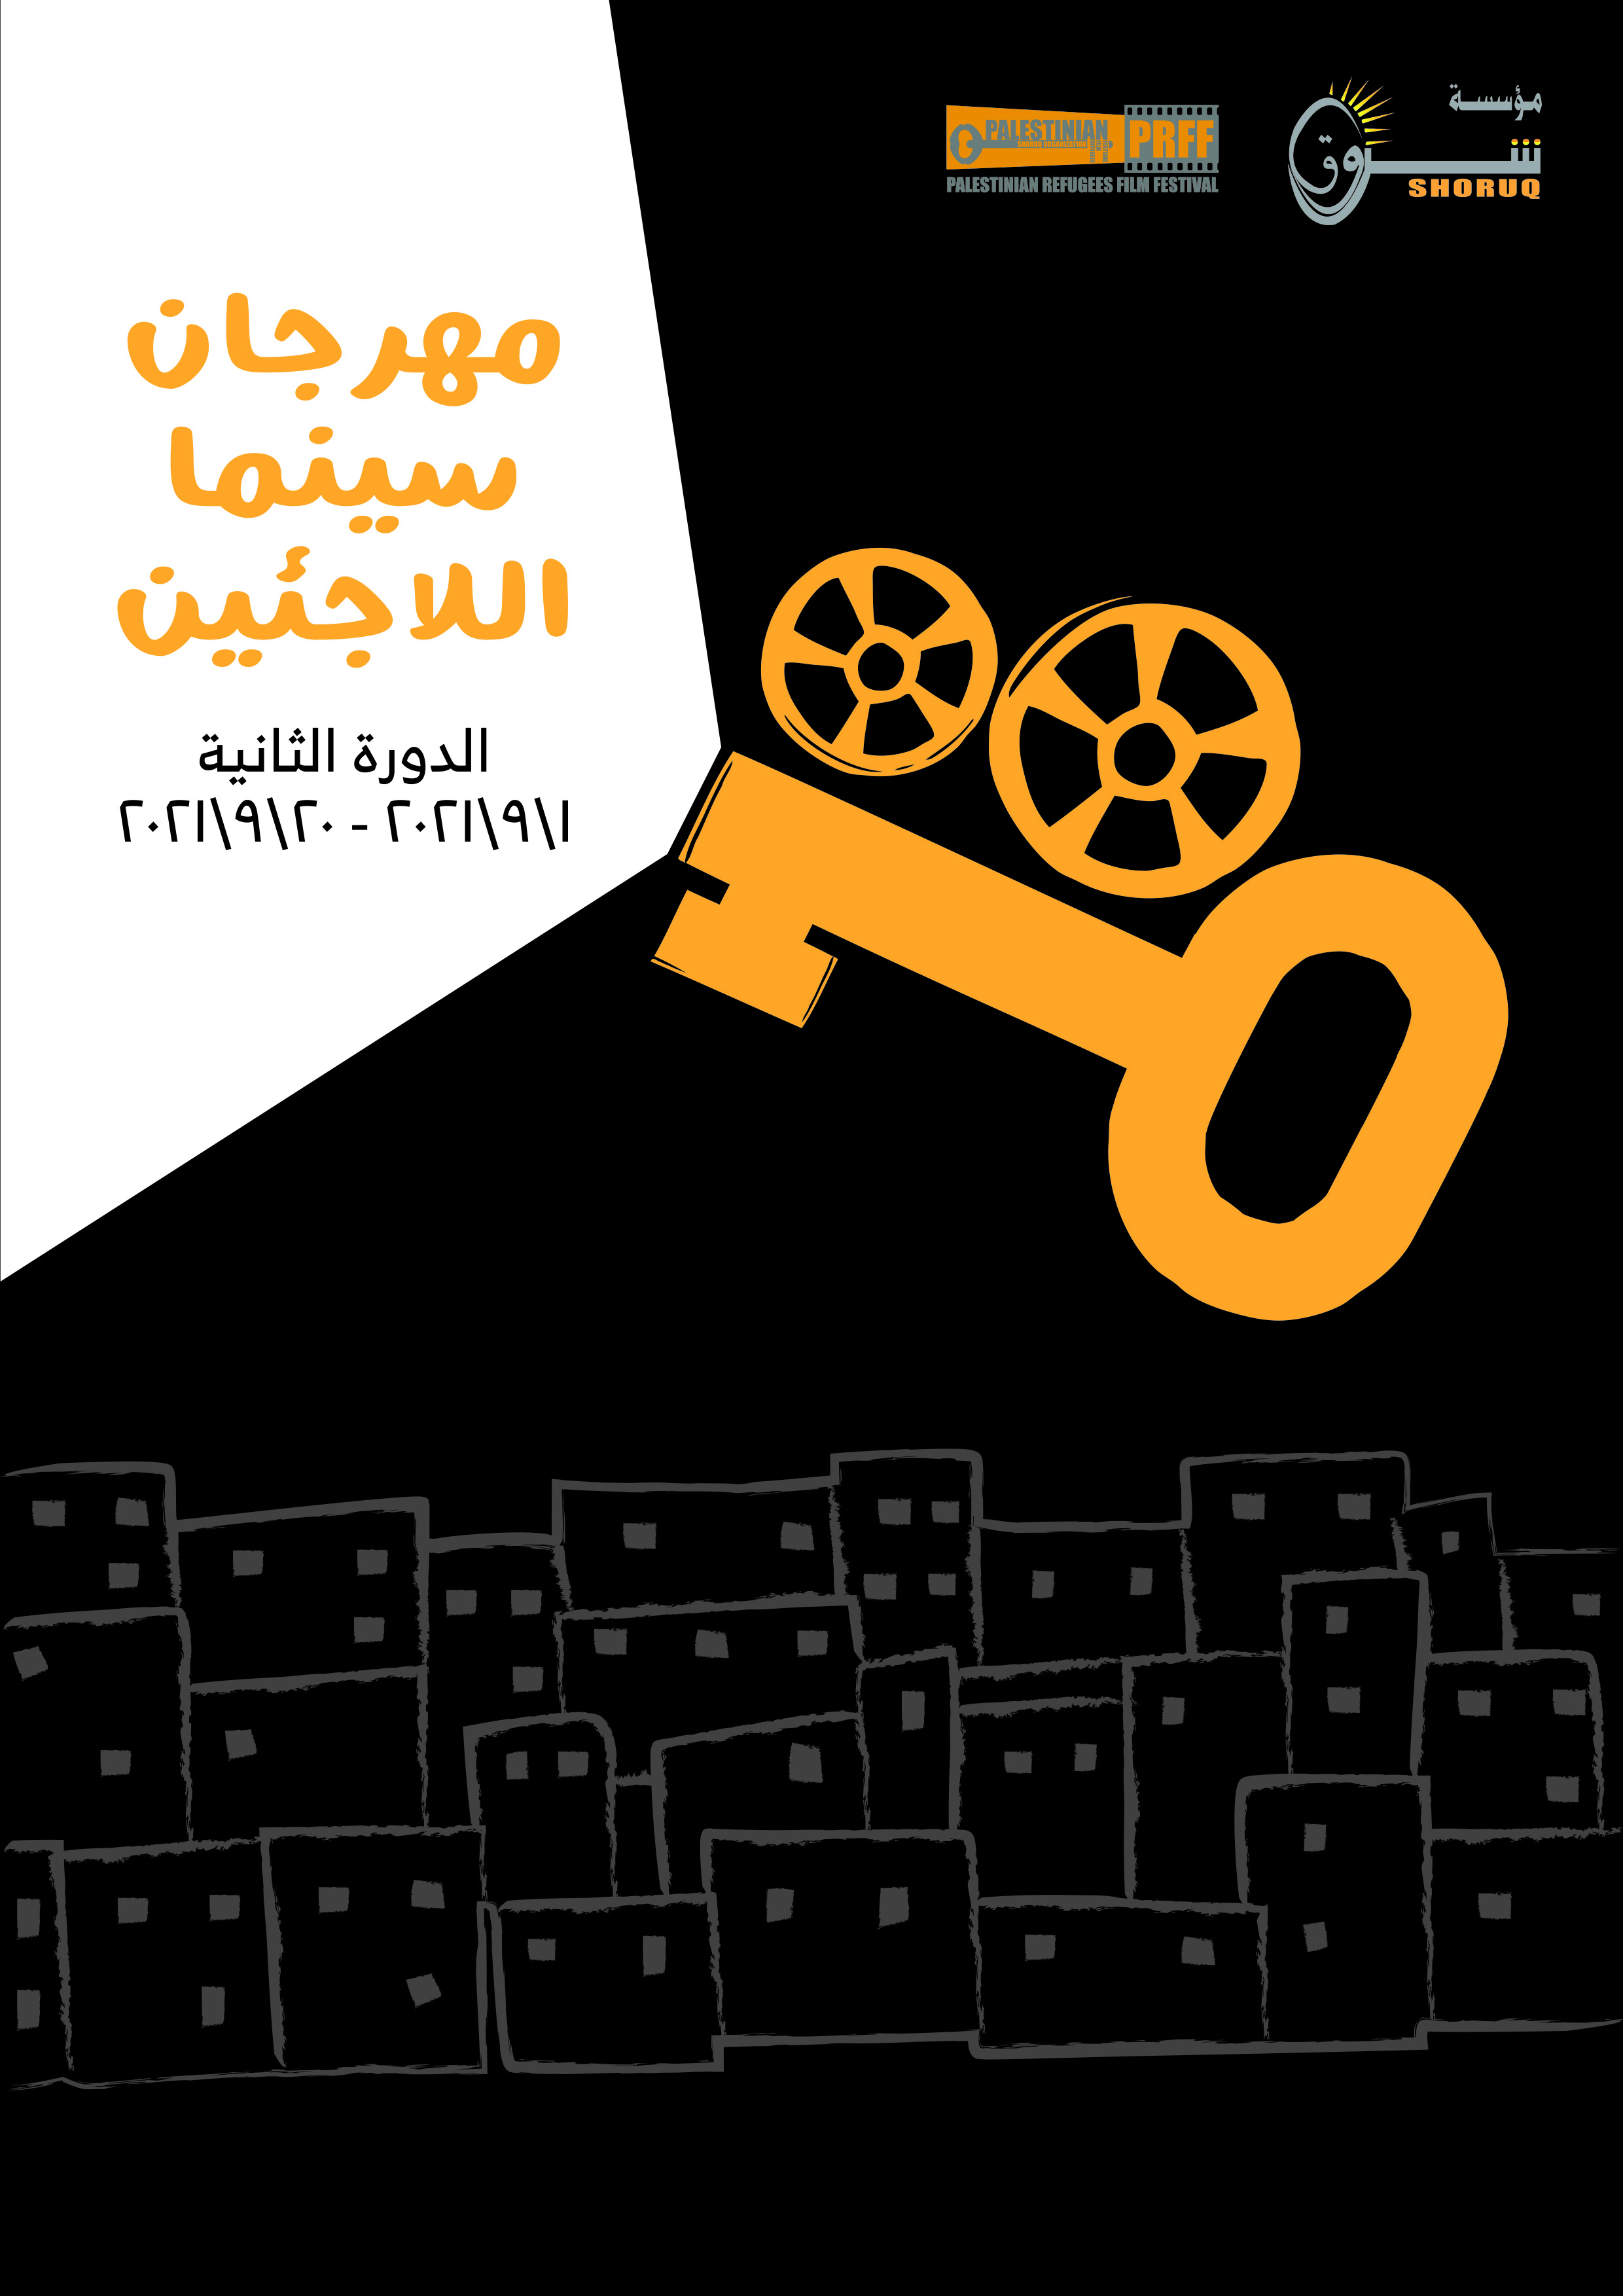 مؤسسة شروق تُطلق مهرجان سينما اللاجئين بدورته الثانية